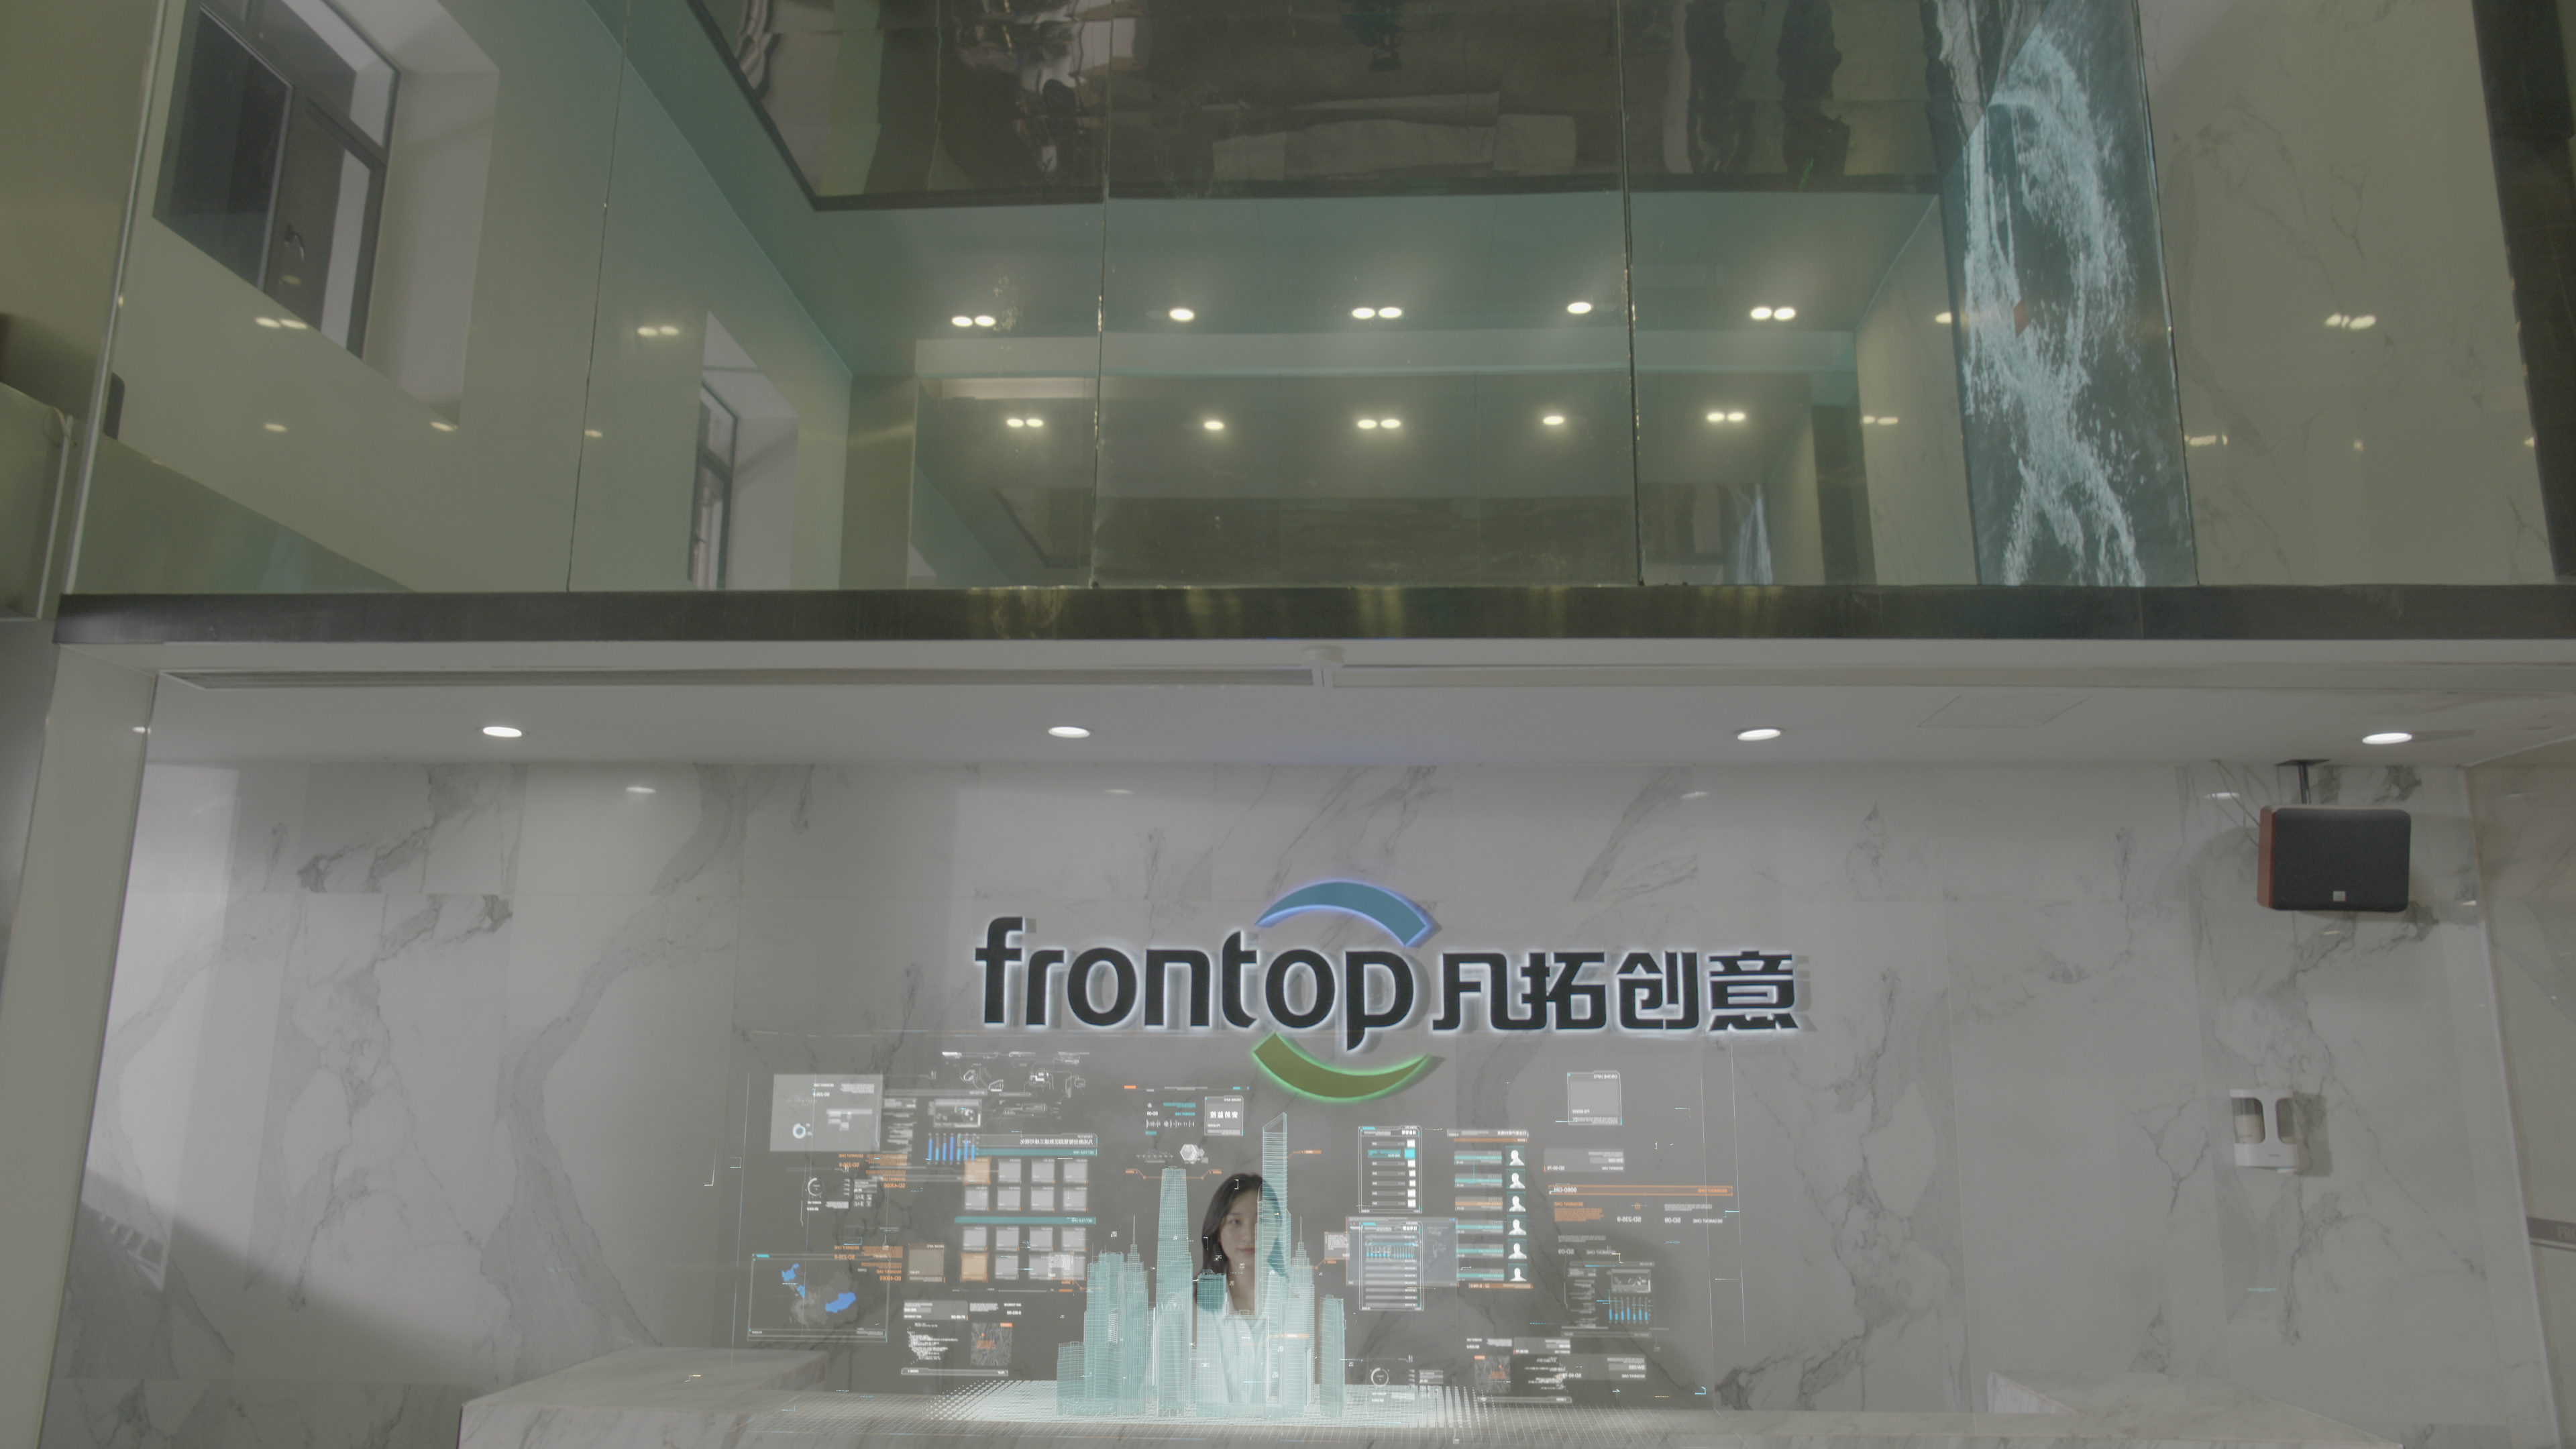 Frontop viert 20 jaar en lanceert nieuwe website